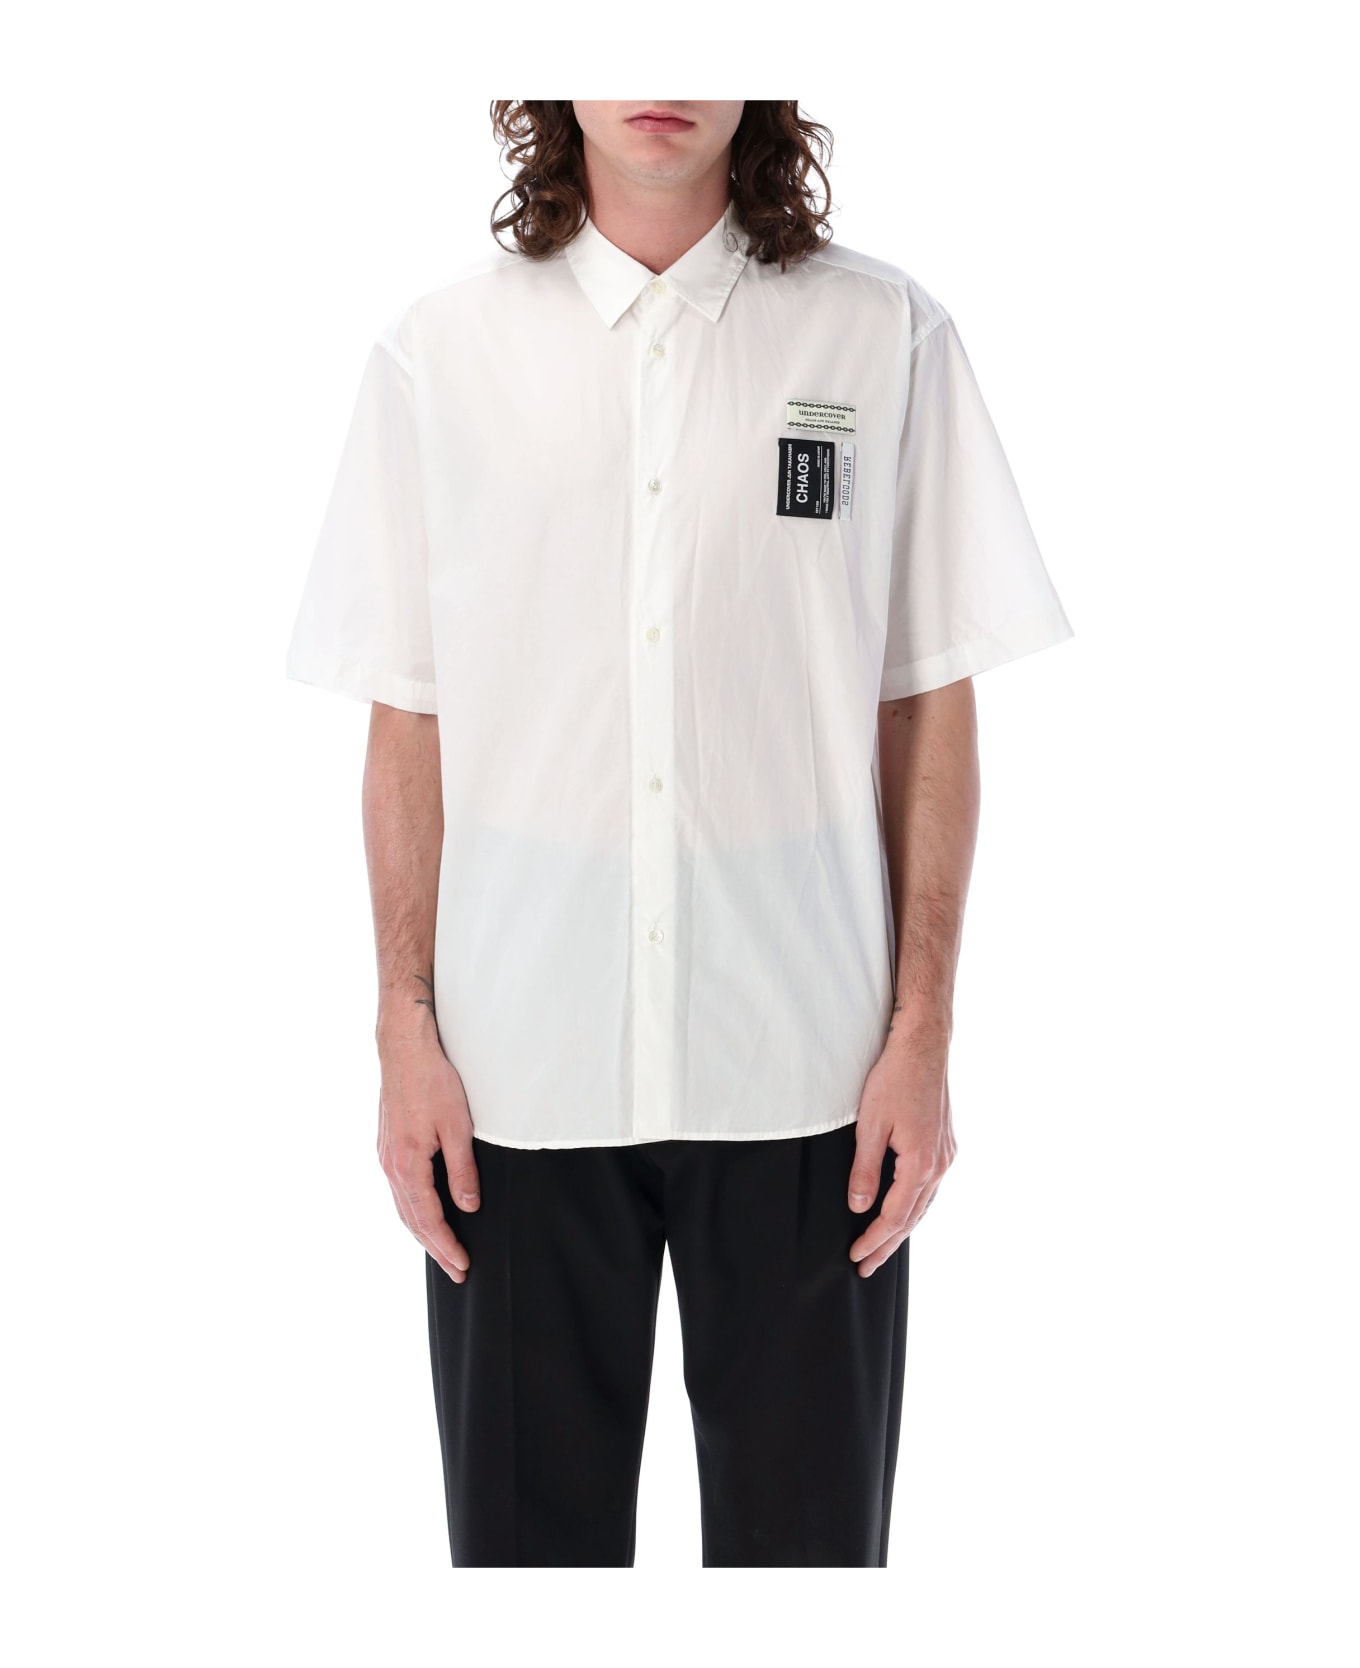 Undercover Jun Takahashi Label S/s Shirt - WHITE